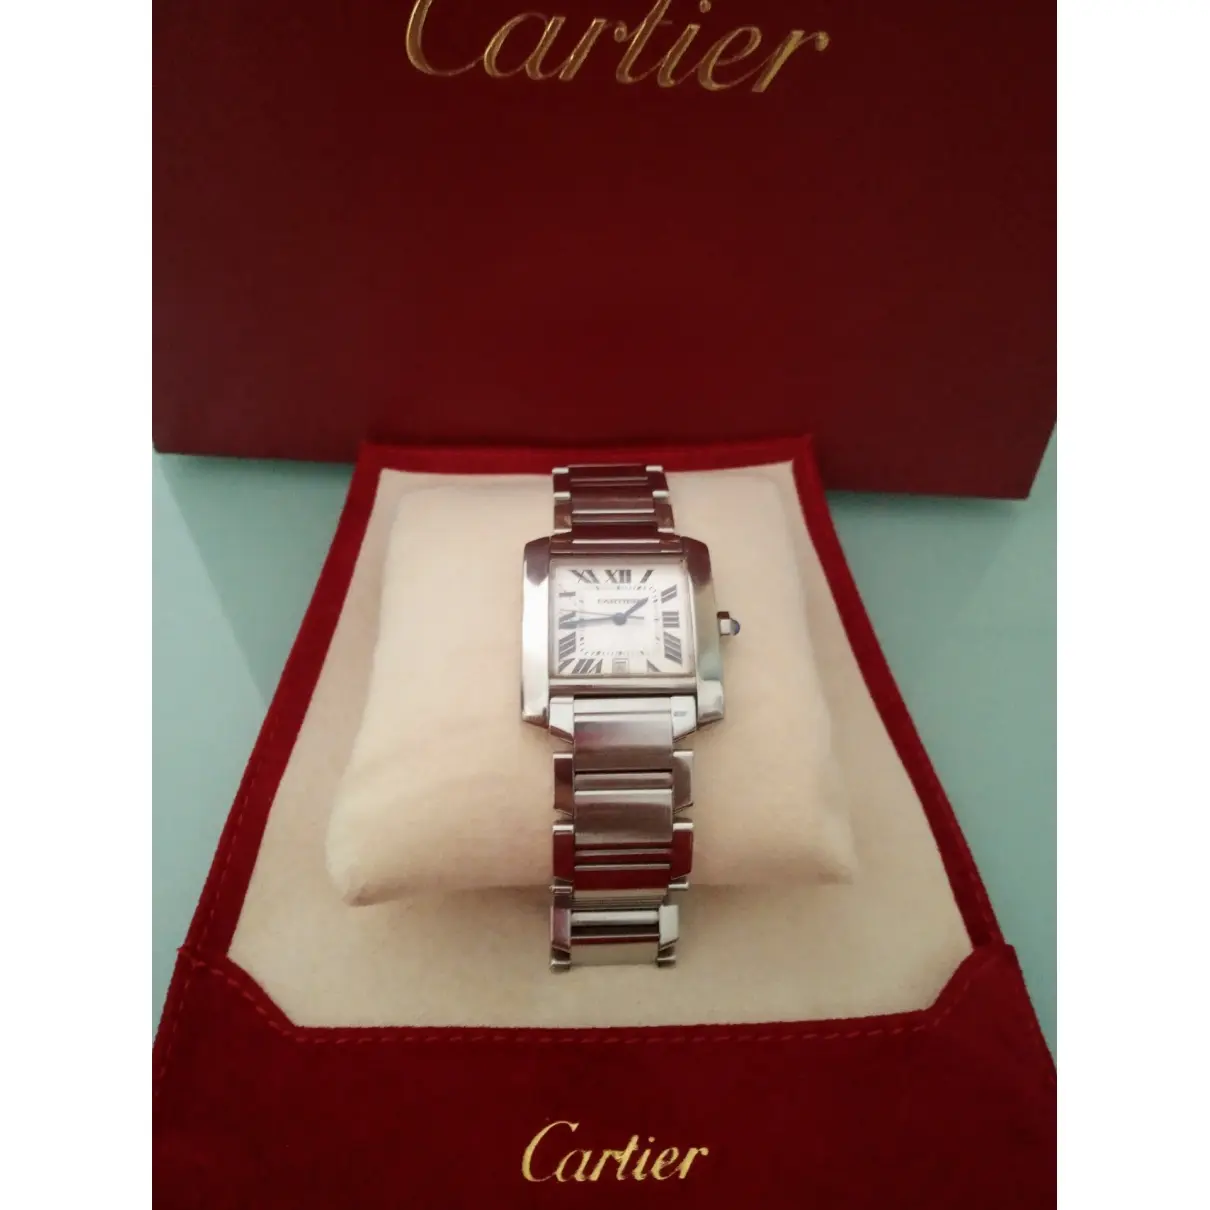 Buy Cartier Tank Française watch online